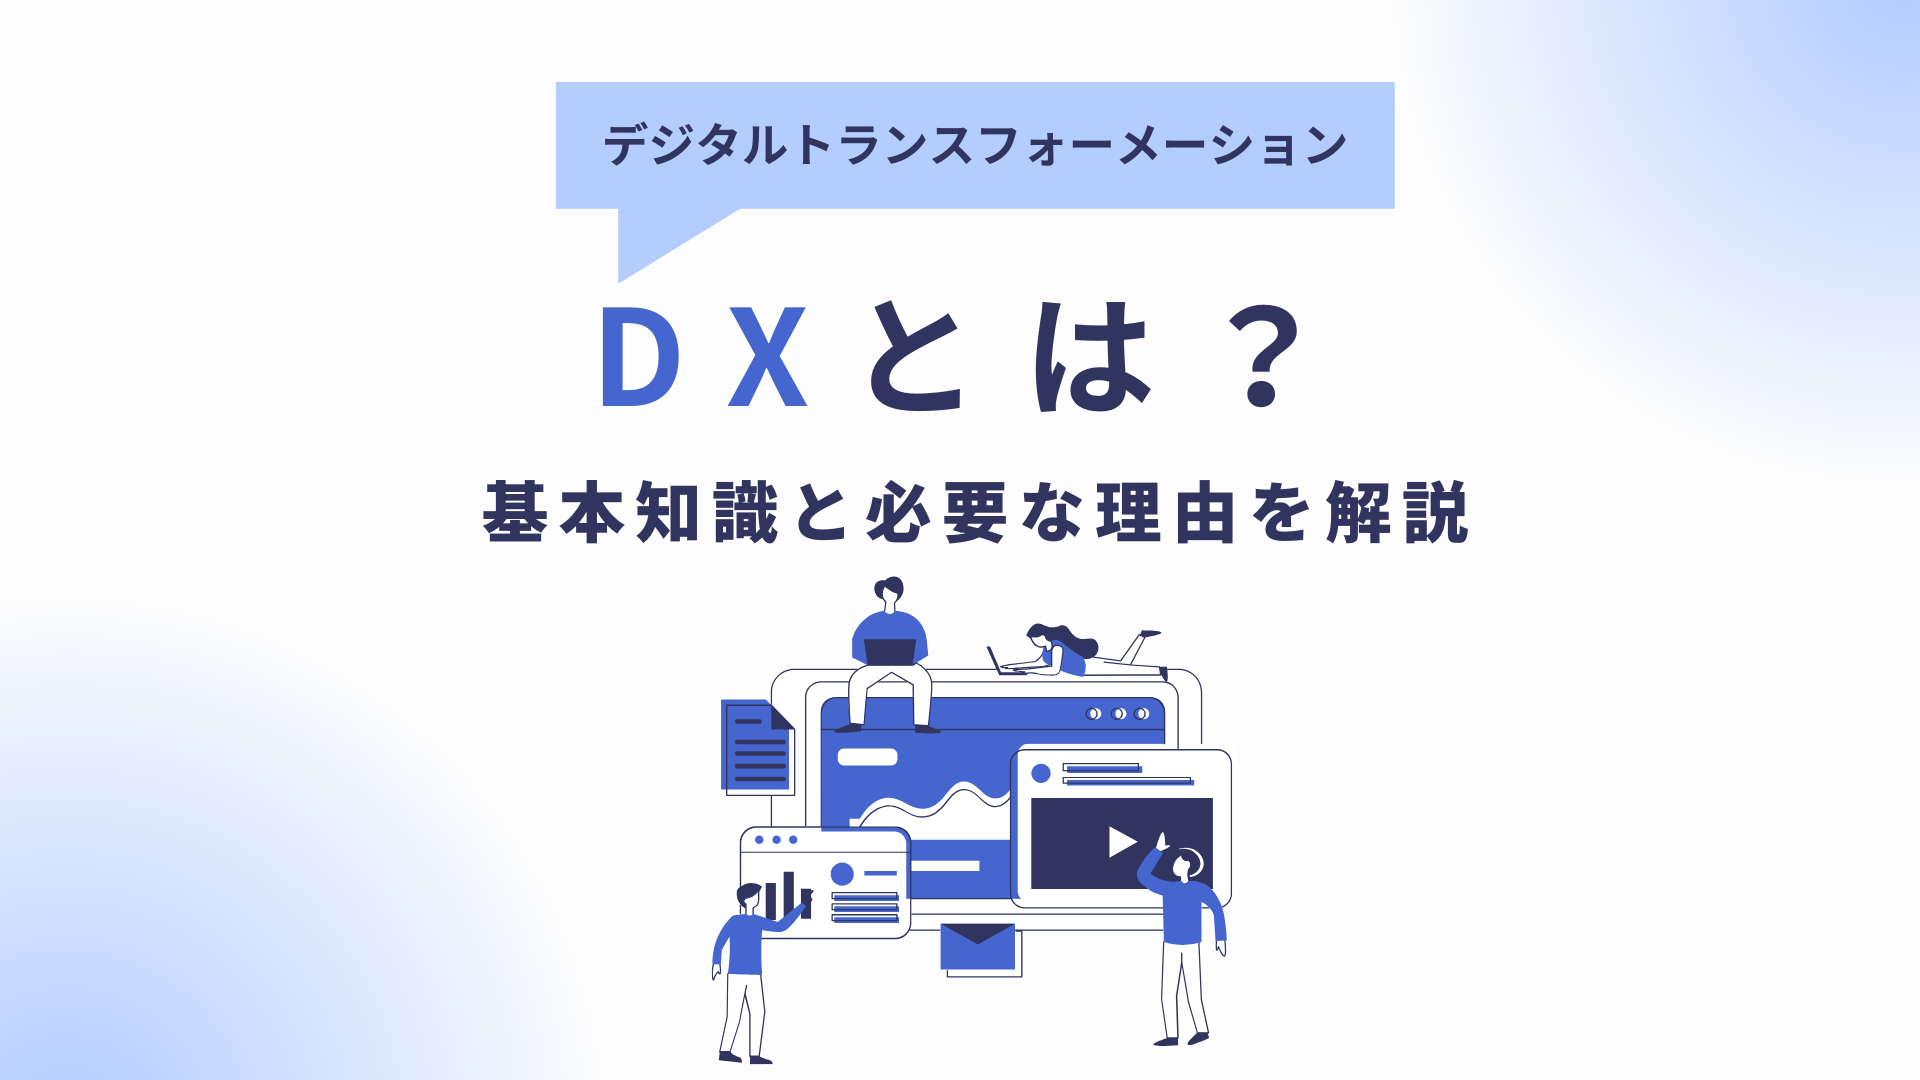 DX(デジタルトランスフォーメーション)とは?基本知識と必要な理由を解説